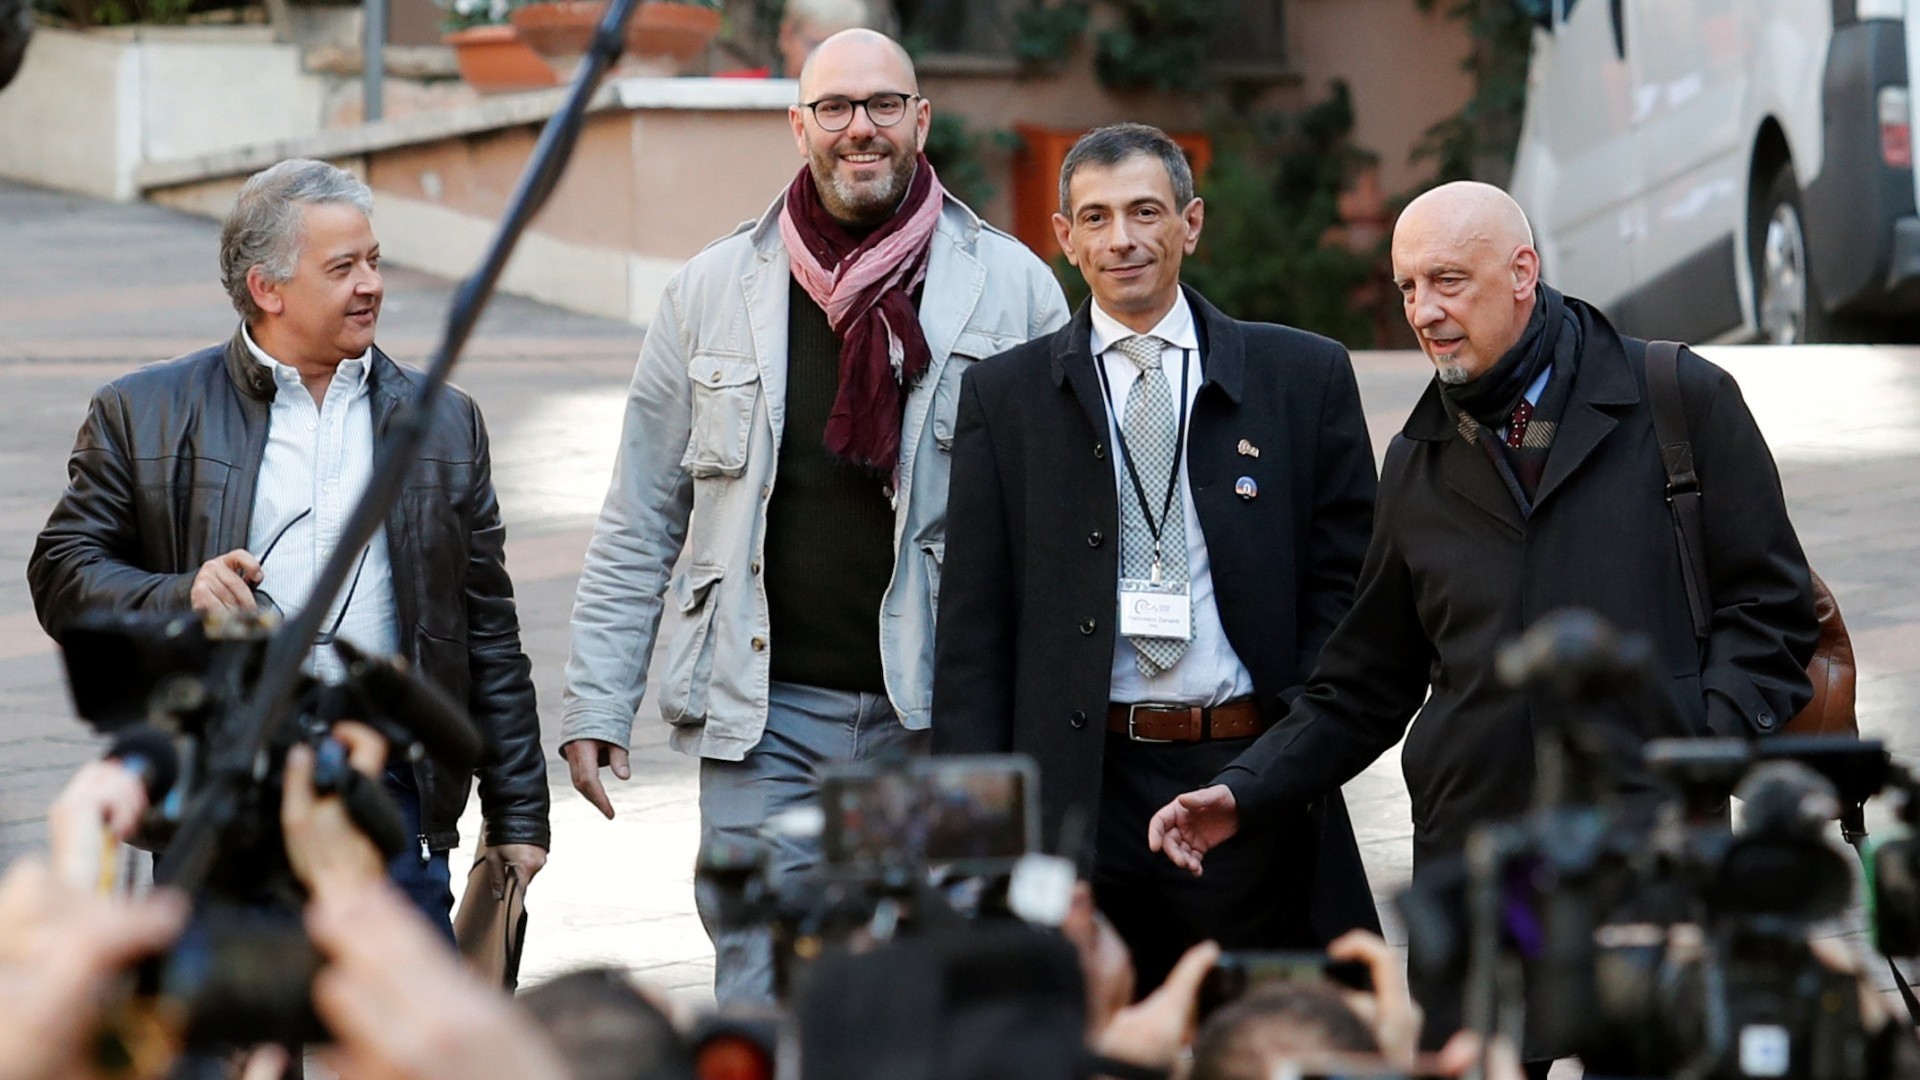 Pedro Salinas, Francois Devaux, Francesco Zanardi y Peter Iseley, sobrevivientes de abuso sexual, hablan con reporteros fuera del Vaticano en Roma (REUTERS/Remo Casilli)